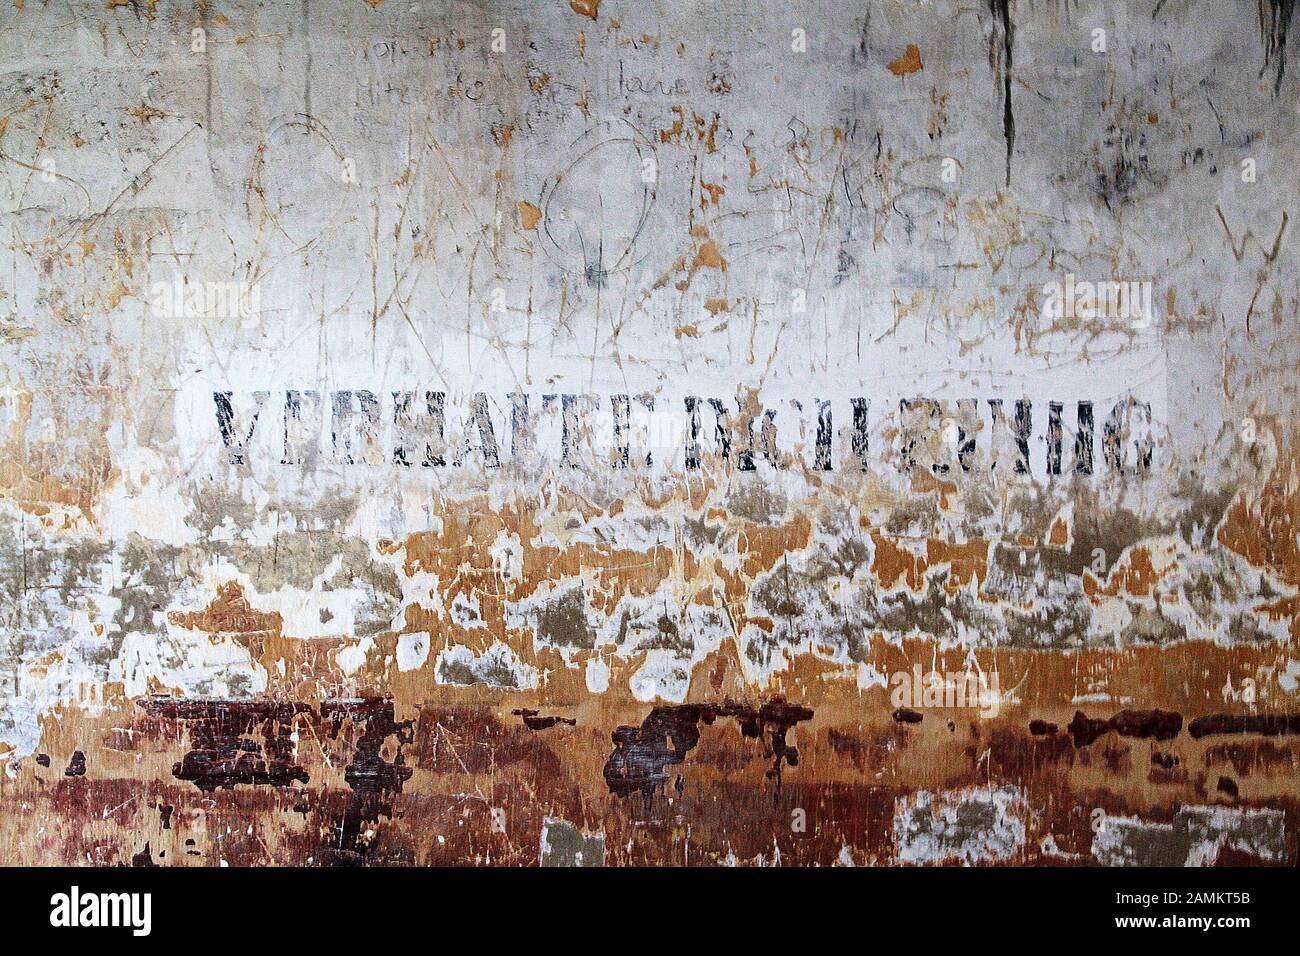 Memorial en el antiguo campo de concentración Auschwitz - Birkenau, en la foto la inscripción "Verhalte dich ruhig!" en un barranco en el antiguo campo de mujeres. [traducción automática] Foto de stock